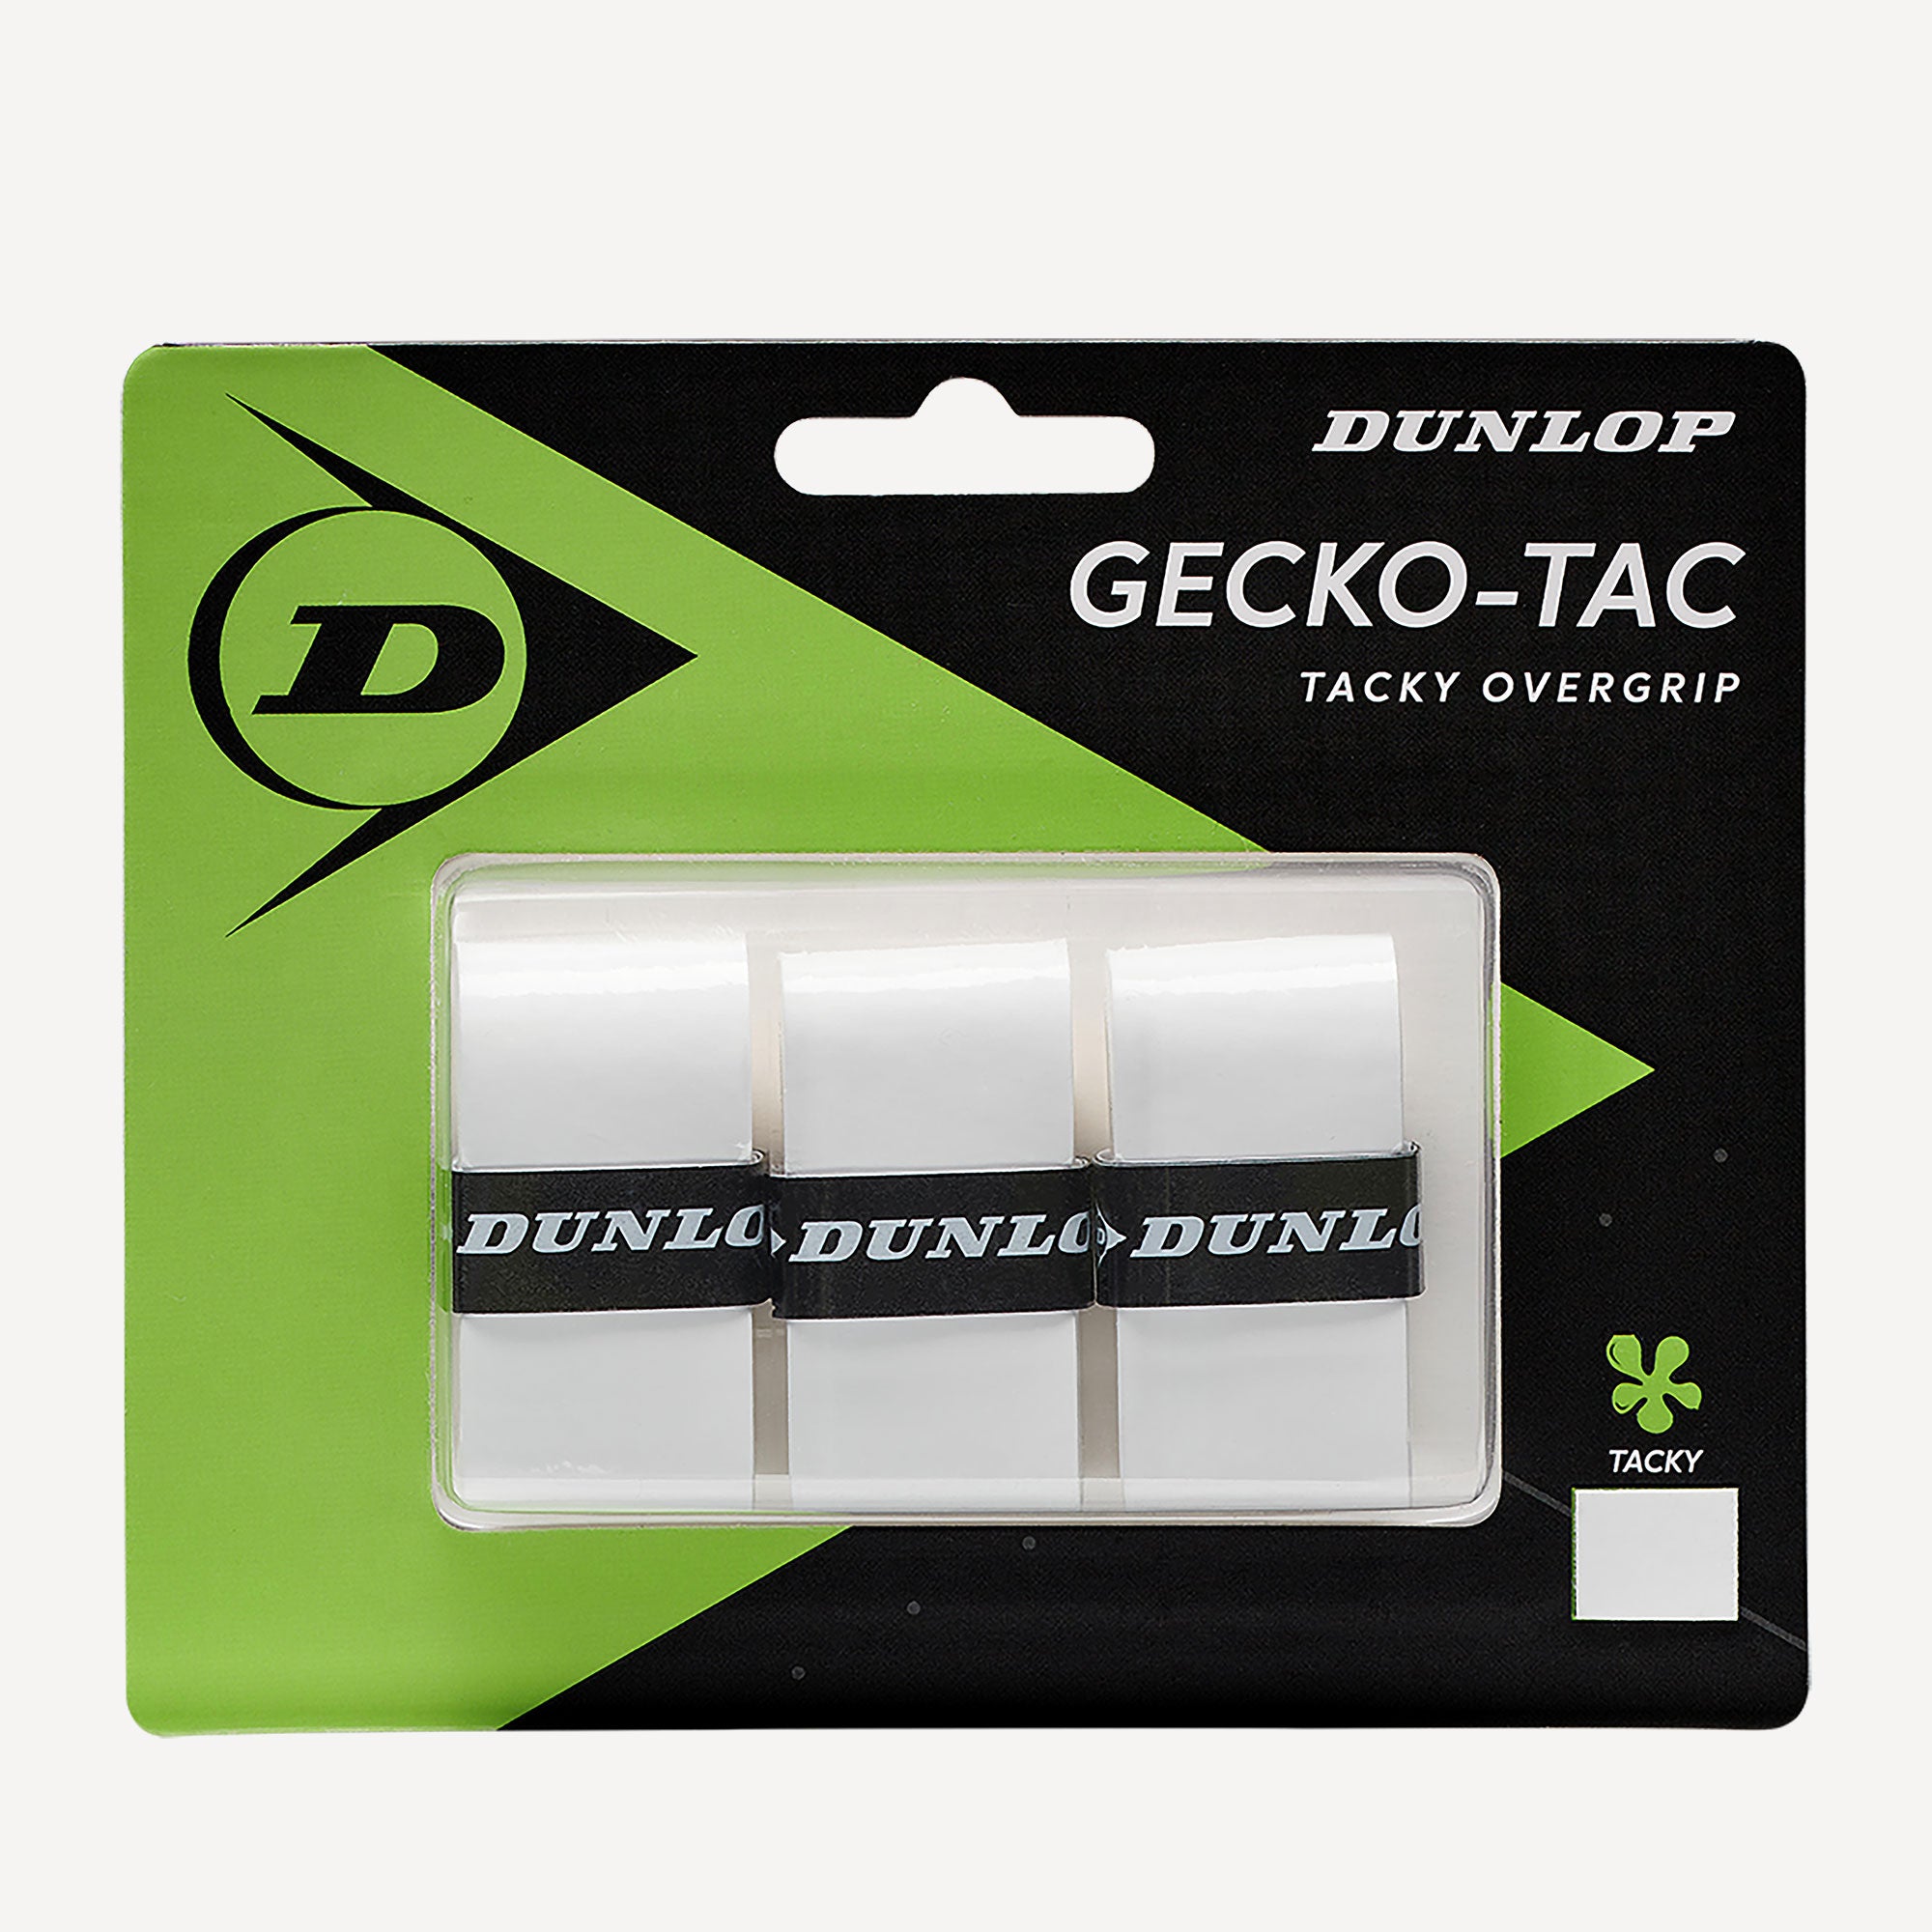 Dunlop Gecko-Tac Tennis Overgrip 1